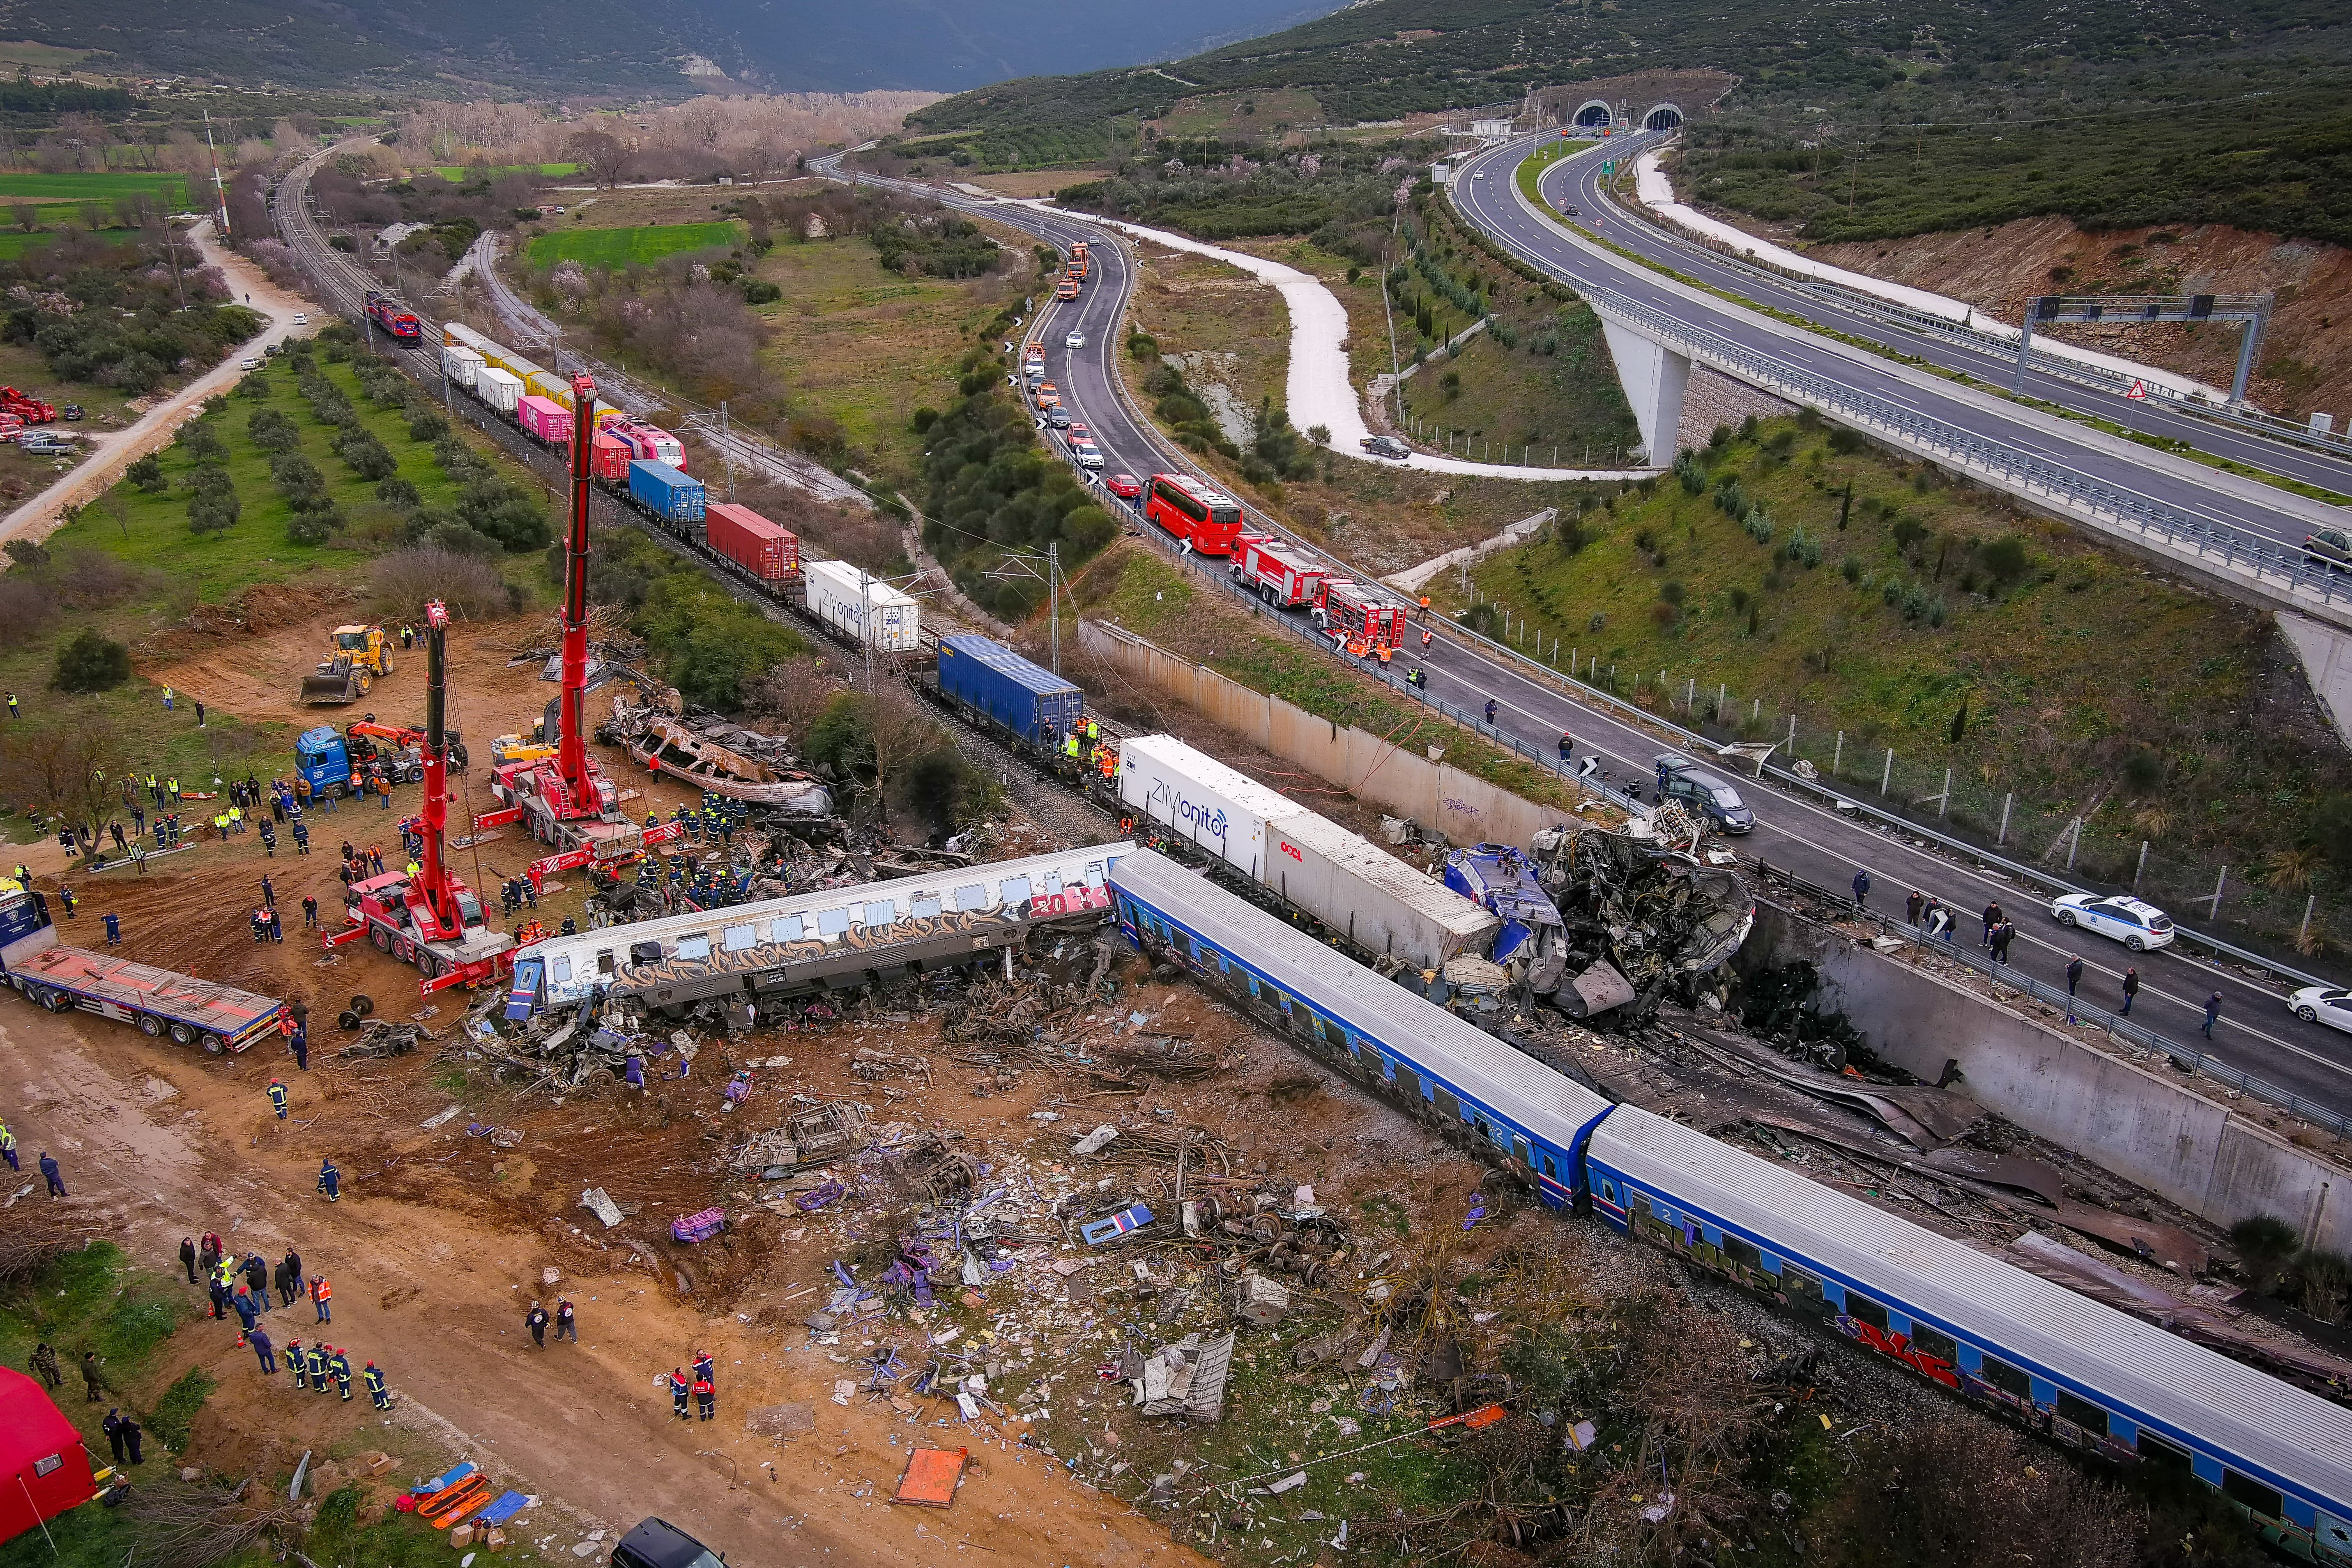 Σε ποια θέση βρίσκεται η Ελλάδα στα σιδηροδρομικά δυστυχήματα;